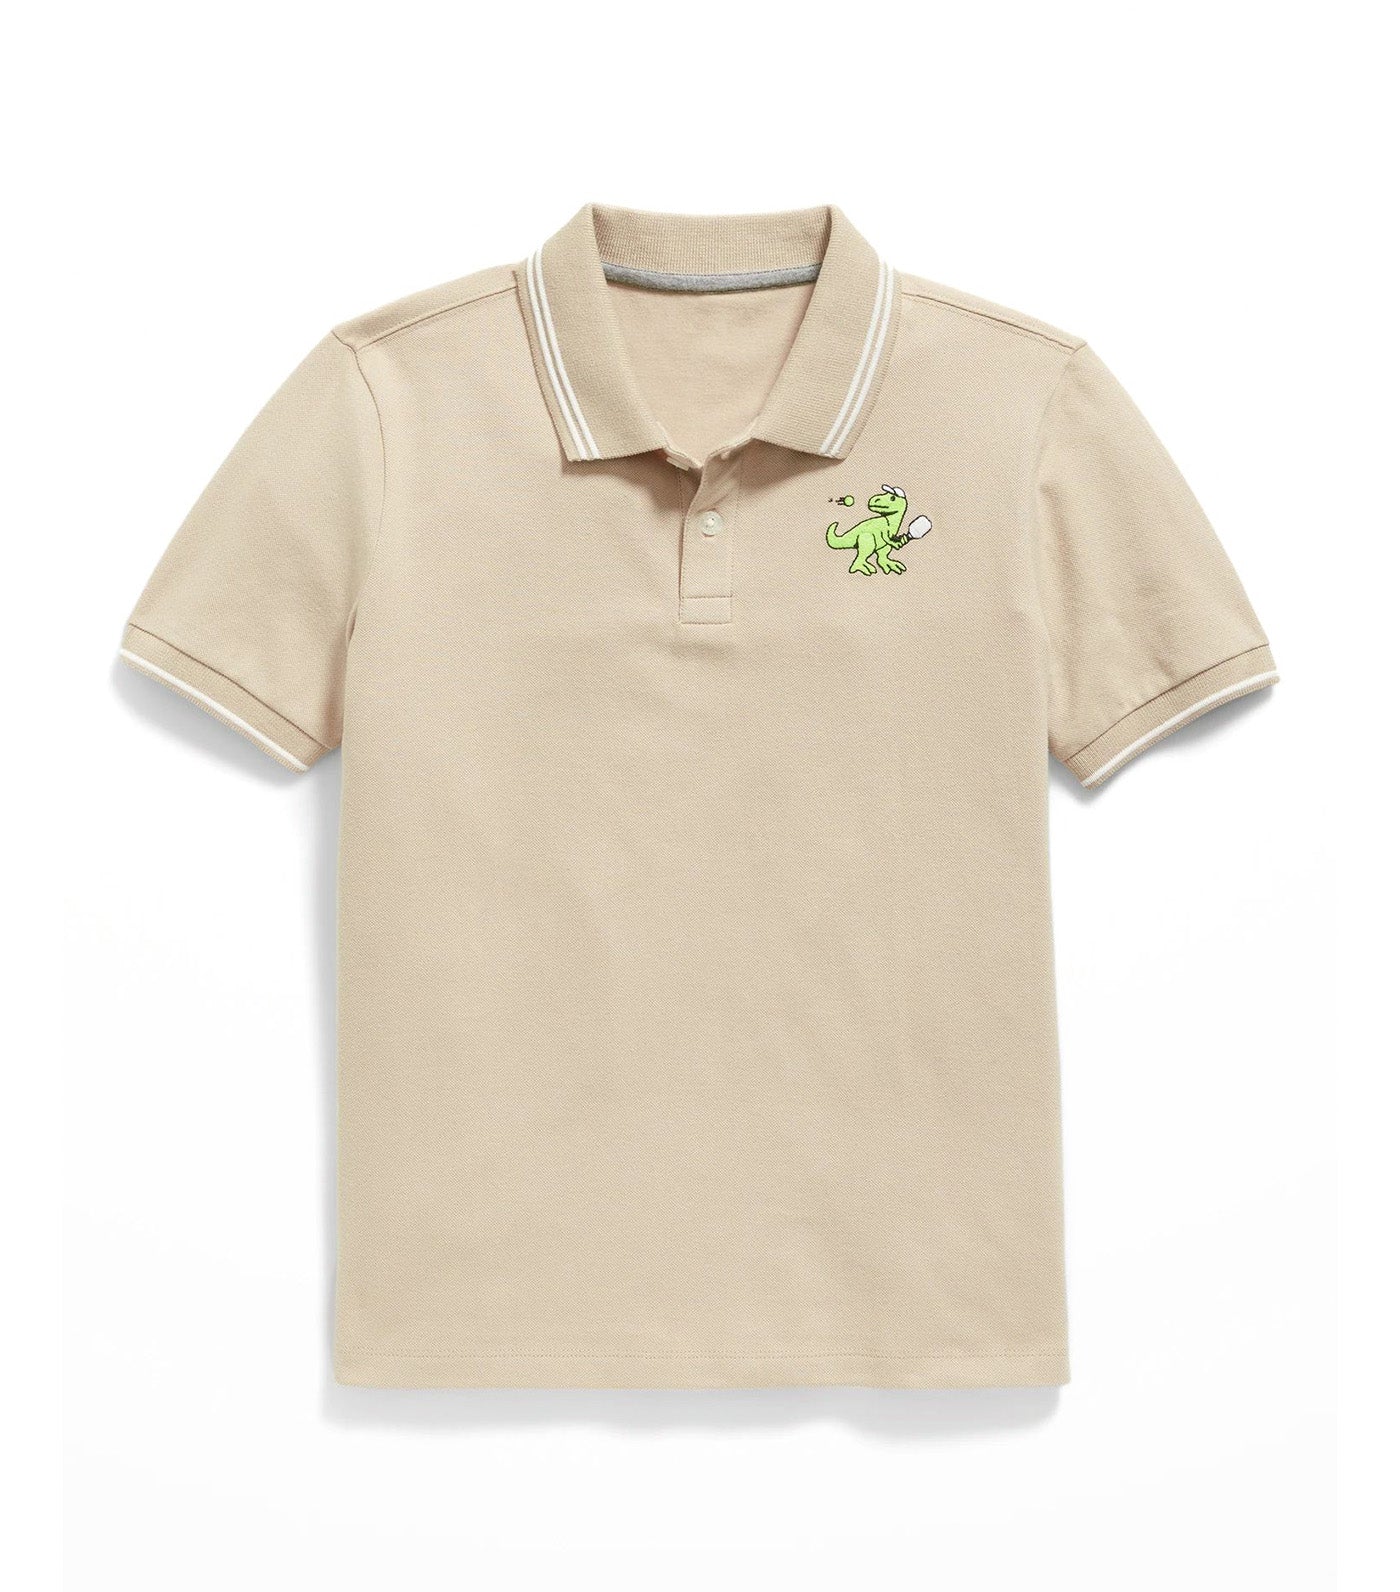 School Uniform Pique Polo Shirt for Boys - A Stone's Throw